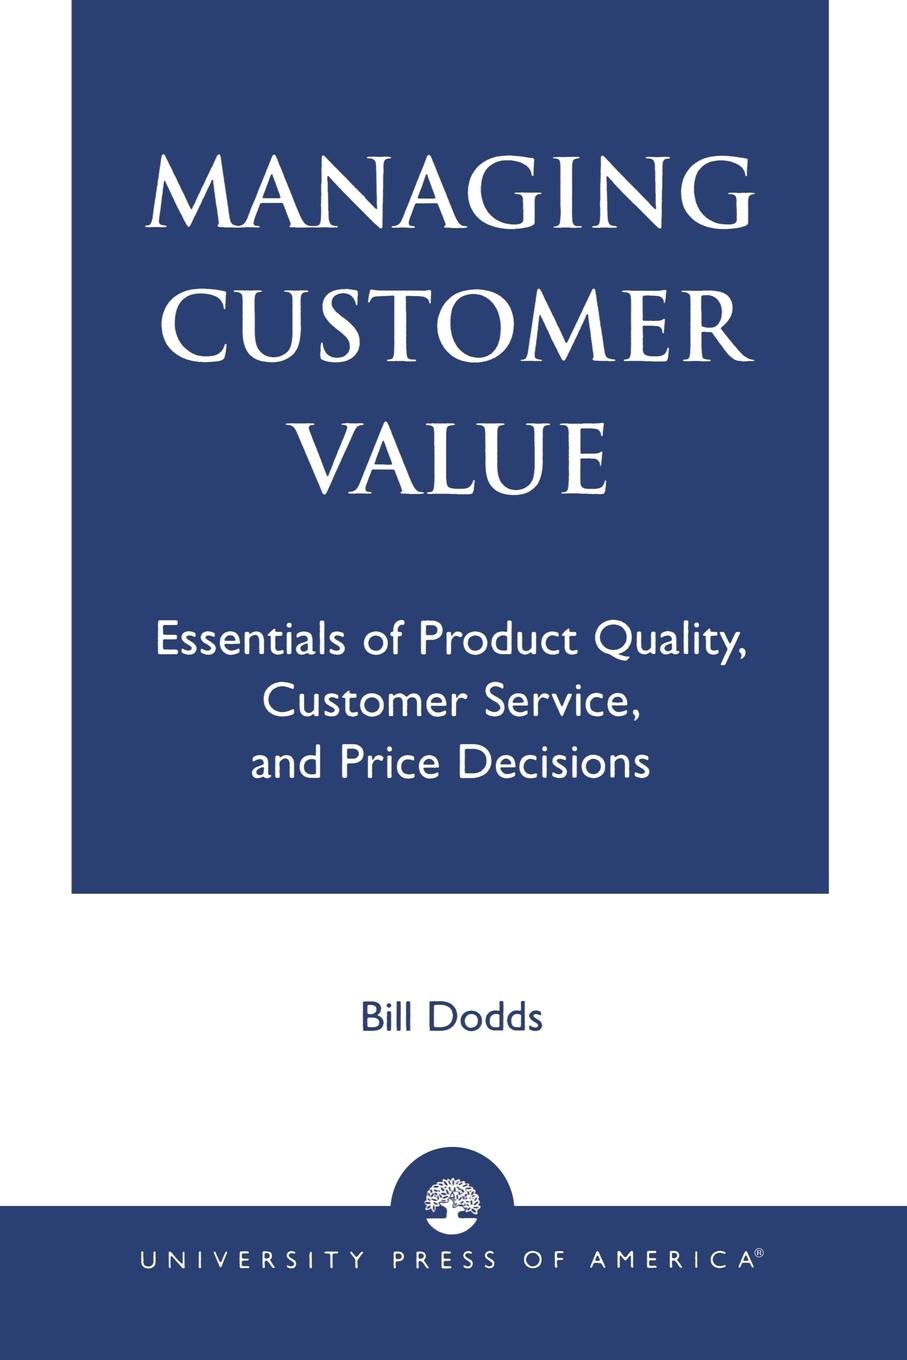 Managing Customer Value - Dodds, Bill